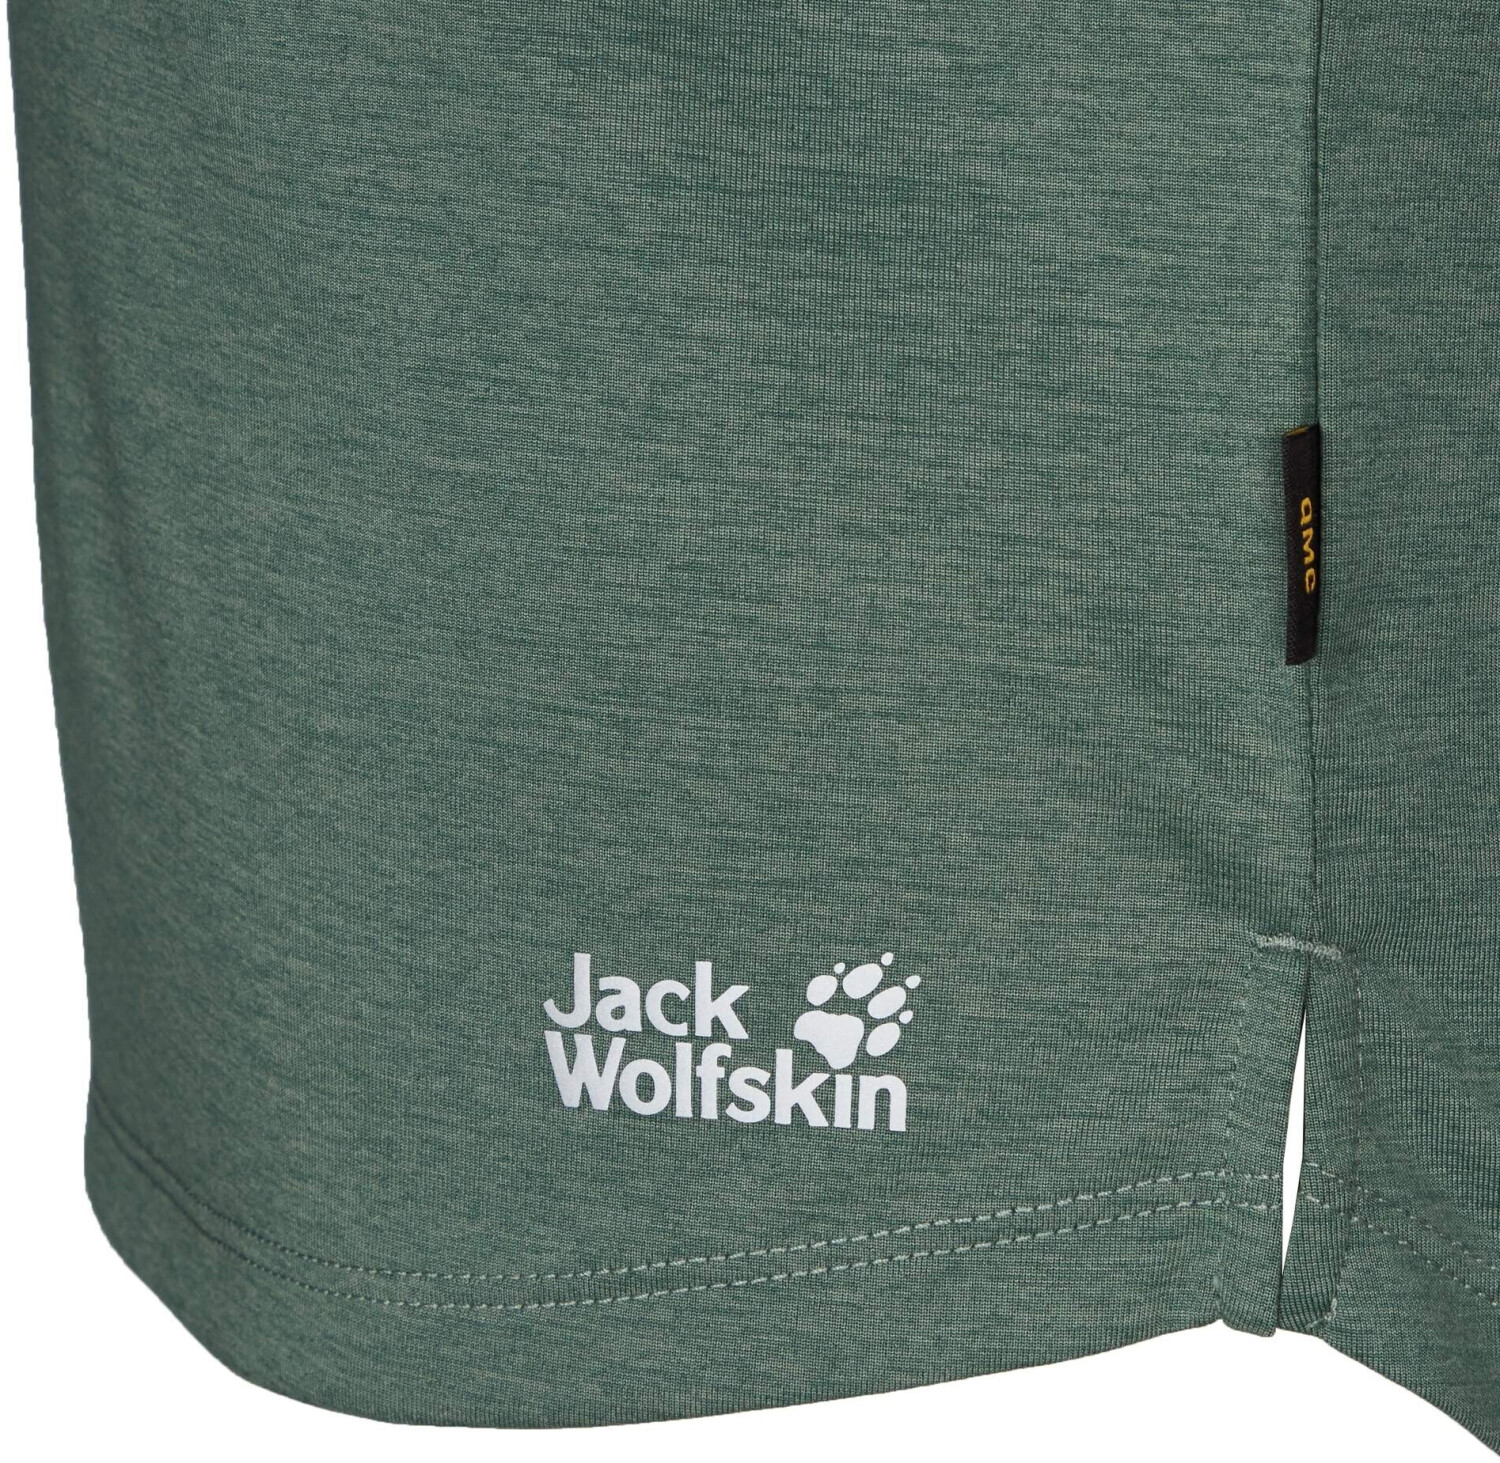 Jack Wolfskin Pack & 26,00 (1806654) T | Preisvergleich ab € green hedge W Go 3/4 bei